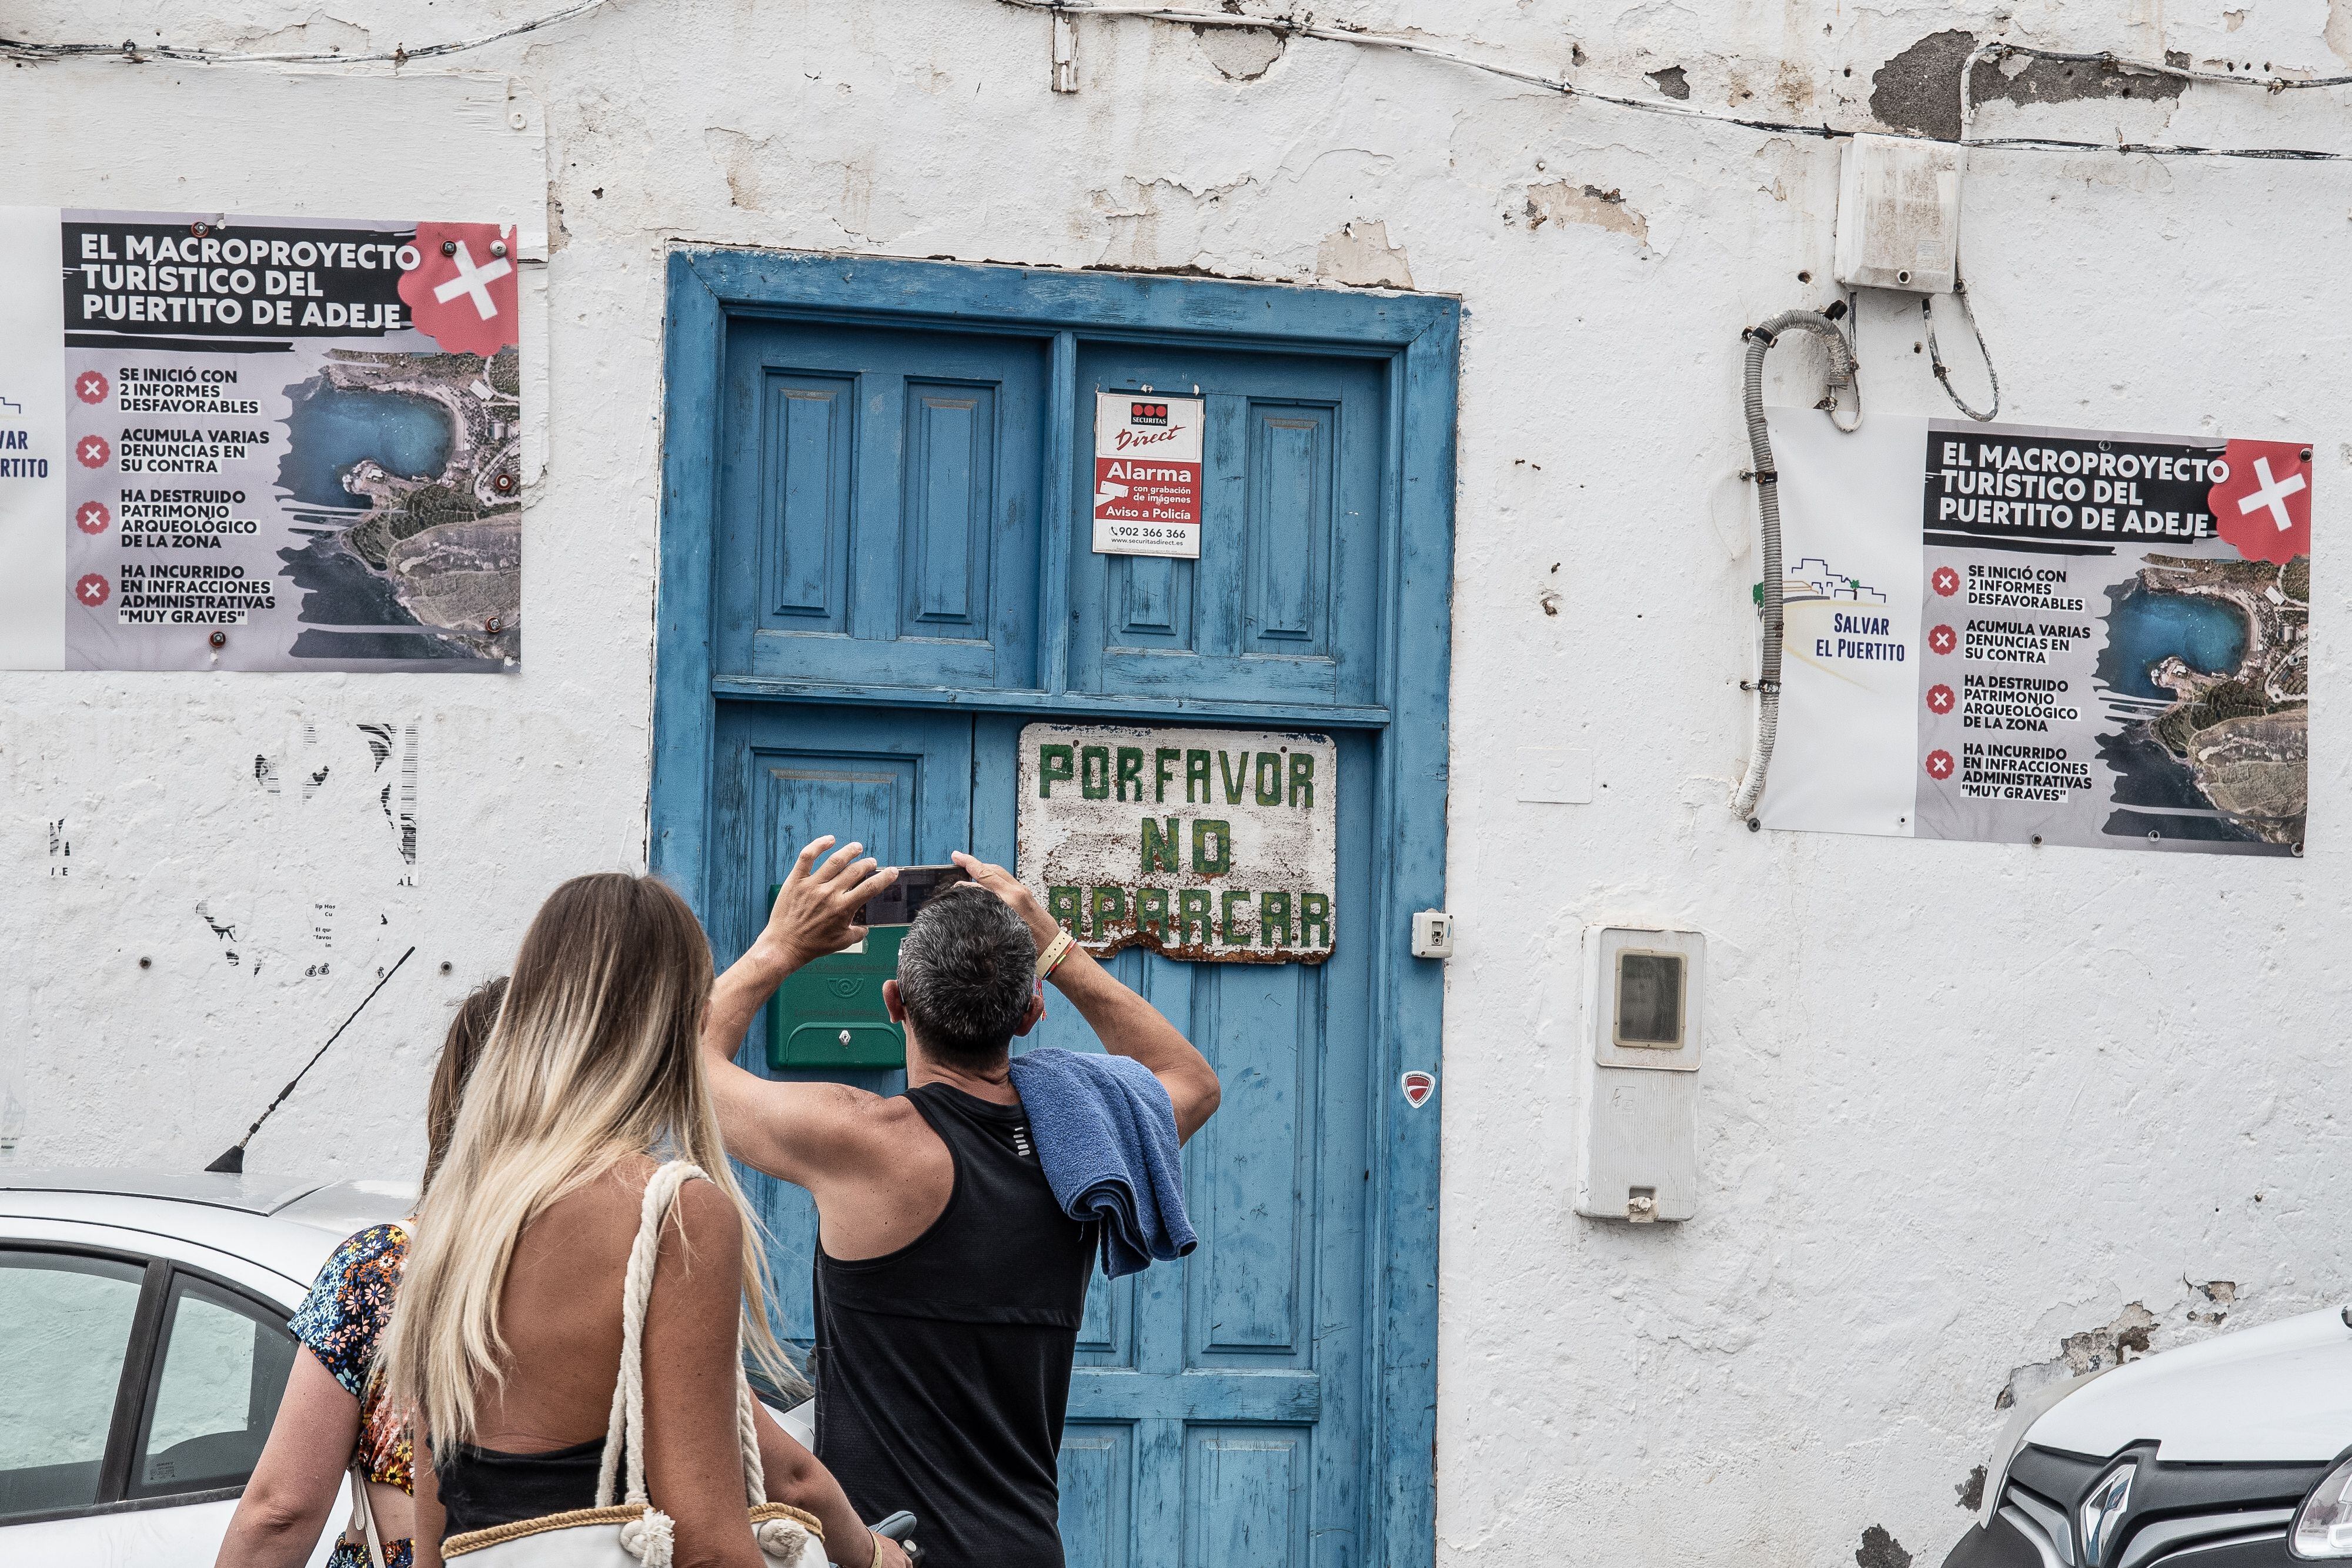 Turistas fotografían los carteles contra la urbanización del Puertito de Adeje, Tenerife. 